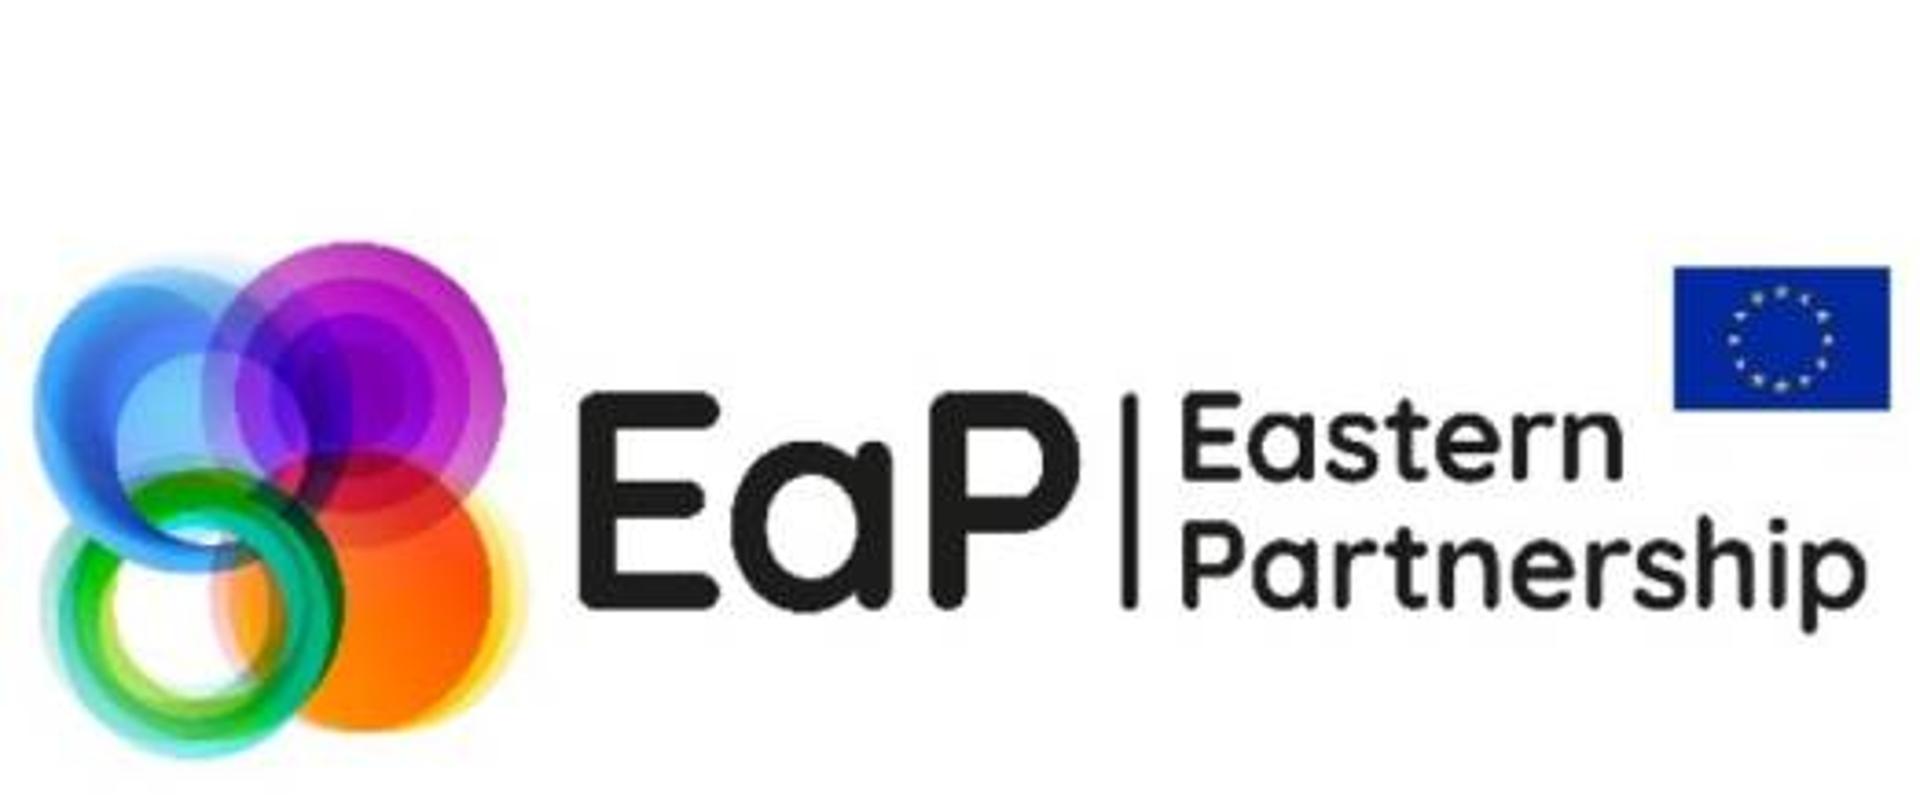 logotyp Partnerstwa Wschodniego: pośrodku skrót EaP, i angielska nazwa Eastern Partnership, po lewej cztery tęczowe, połączone ze sobą koła, a po prawej - flaga UE